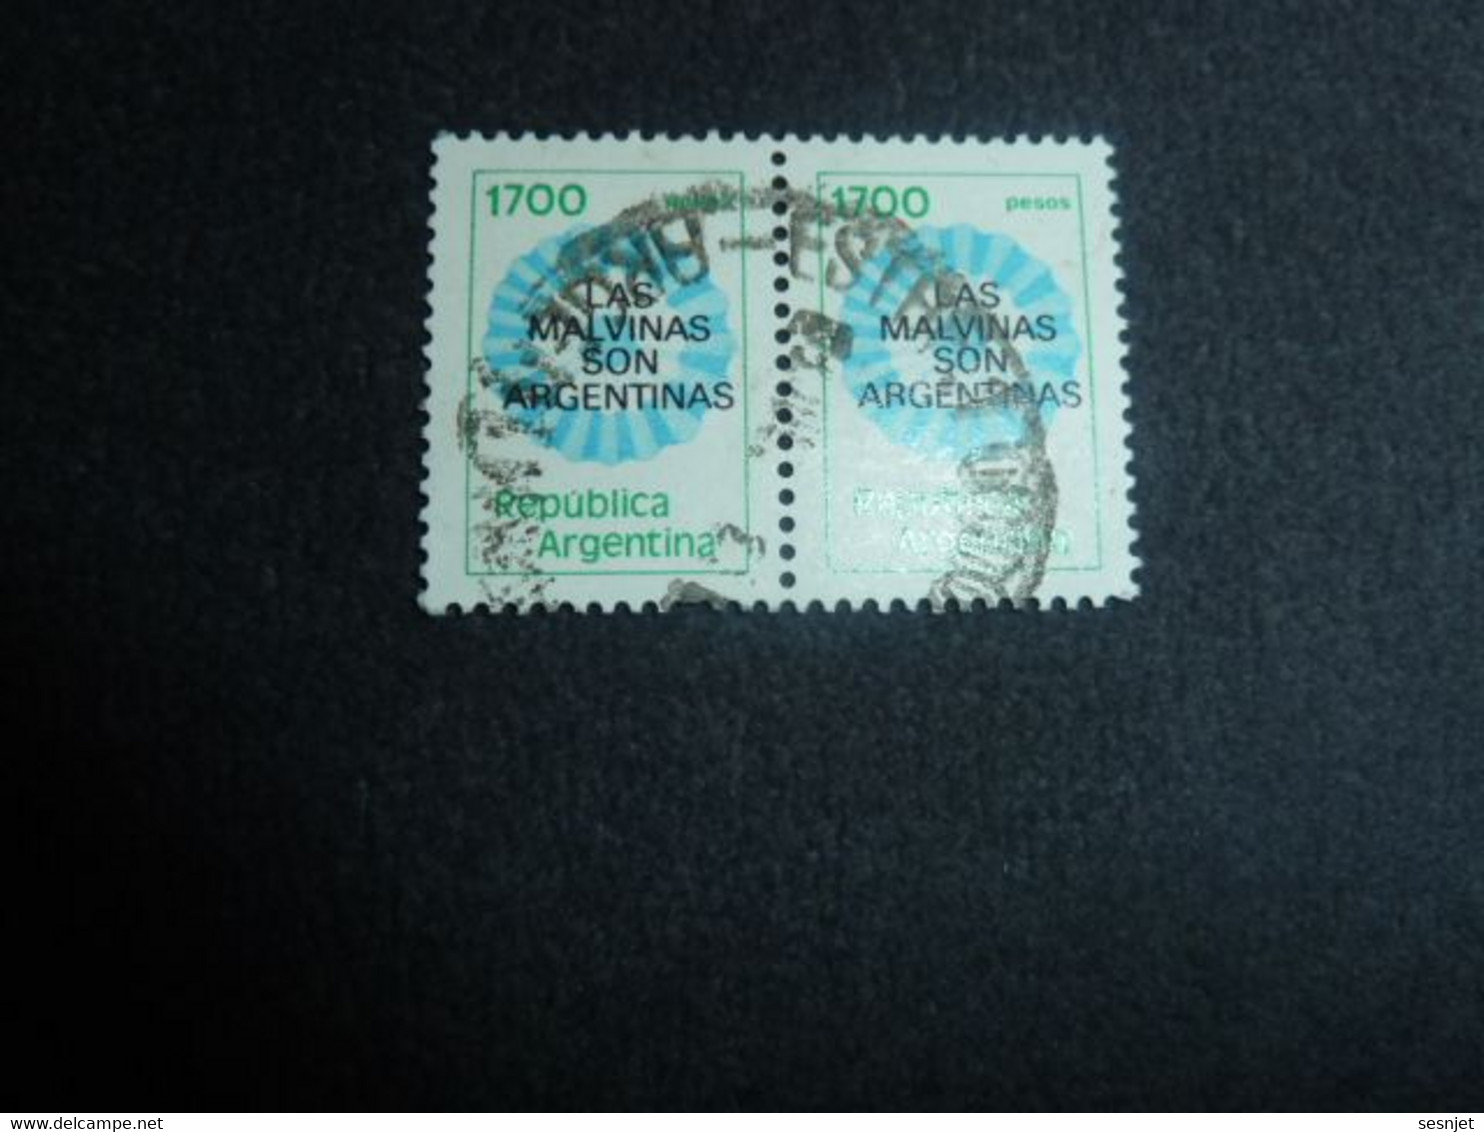 Republica Argentina - Iles Malouines - 1700 Pesos - Yt 1288 - Multicolore - Double Oblitérés - Année 1982 - - Used Stamps